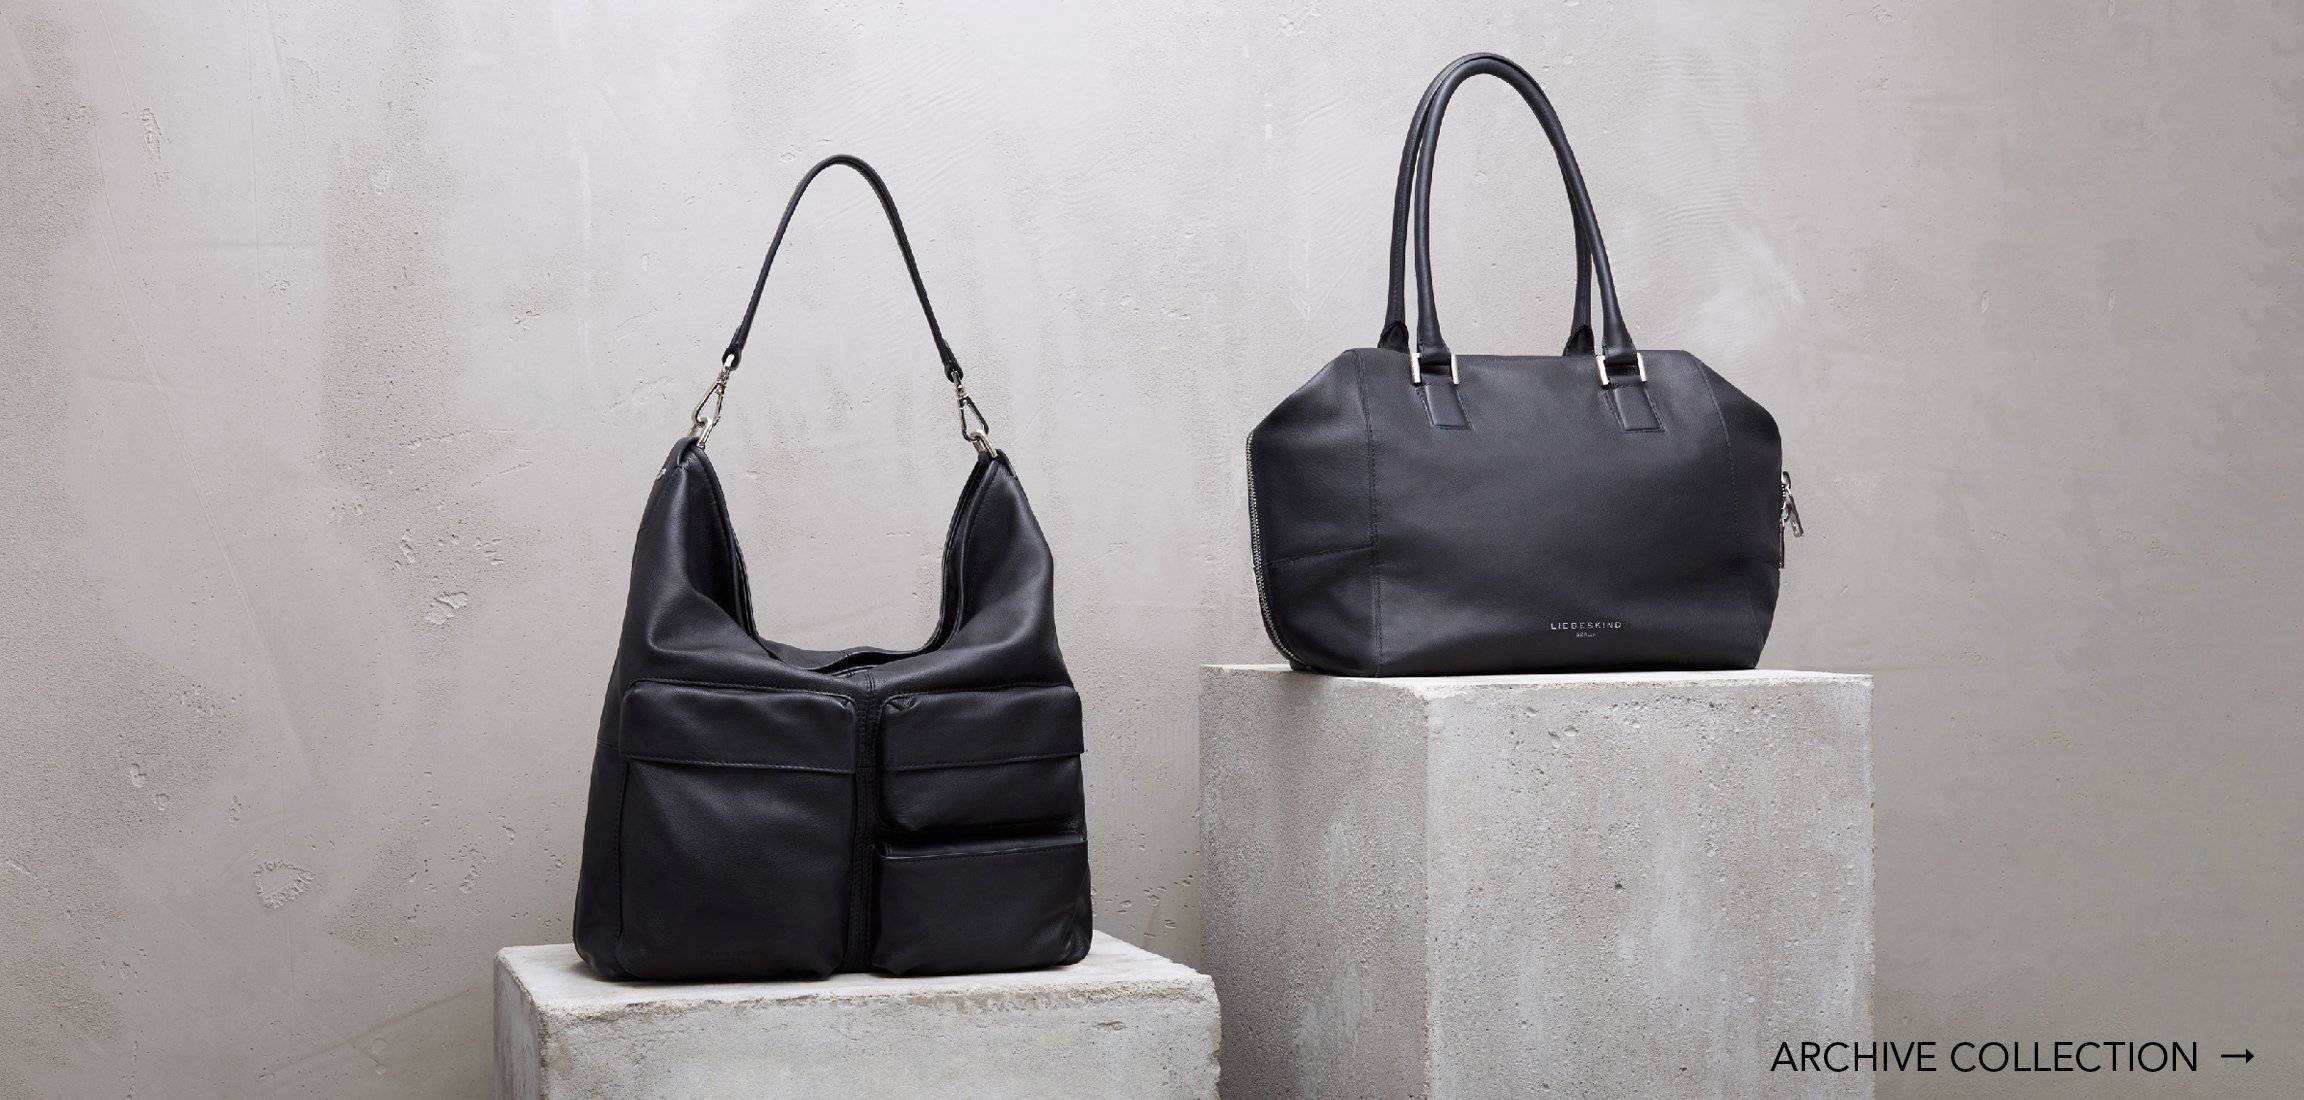 Best Designer Duffle Bags & Weekenders – Von Baer